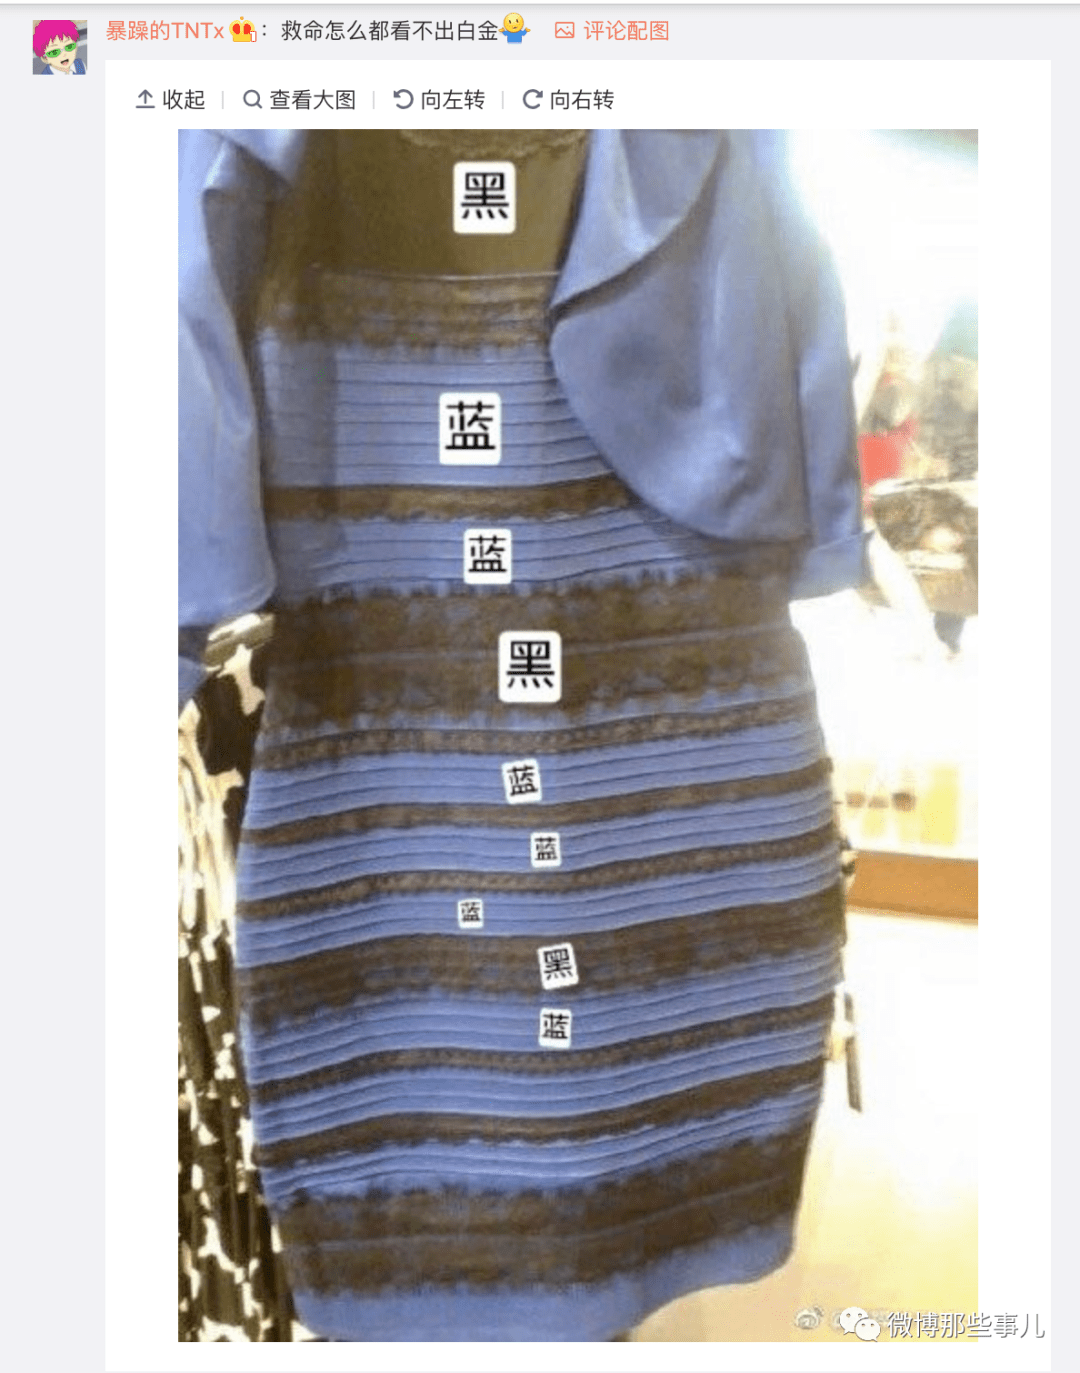 这条裙子是蓝黑!不是白金!蓝黑党万岁!